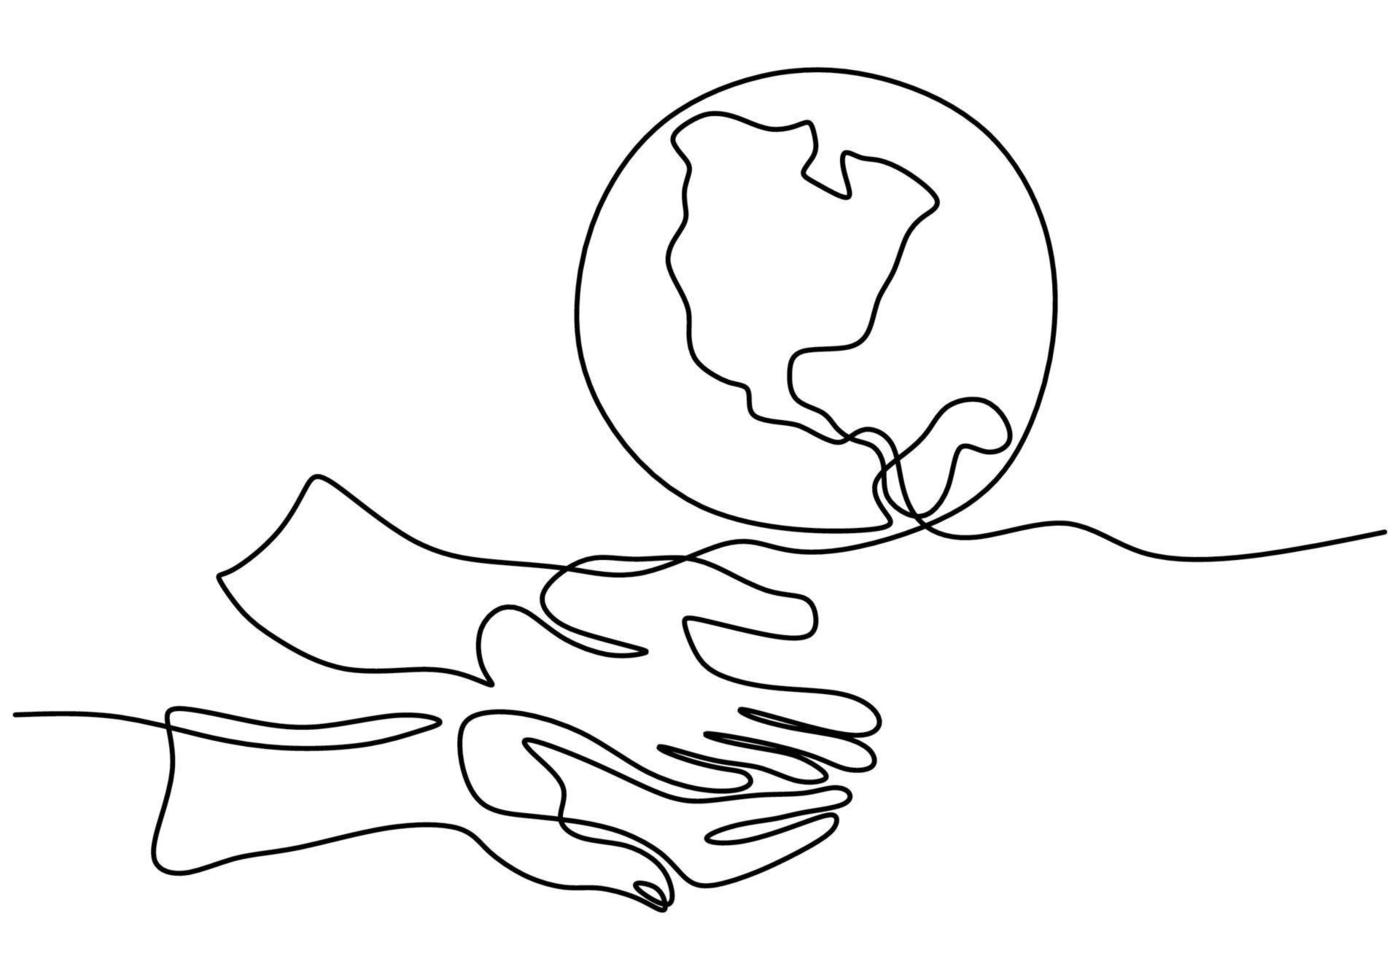 dibujo continuo de una línea de manos sosteniendo el globo terráqueo aislado sobre fondo blanco. tema del día de la tierra. una mano humana que sostiene el diseño del bosquejo dibujado a mano del contorno de la tierra del planeta del mundo. ilustración vectorial vector